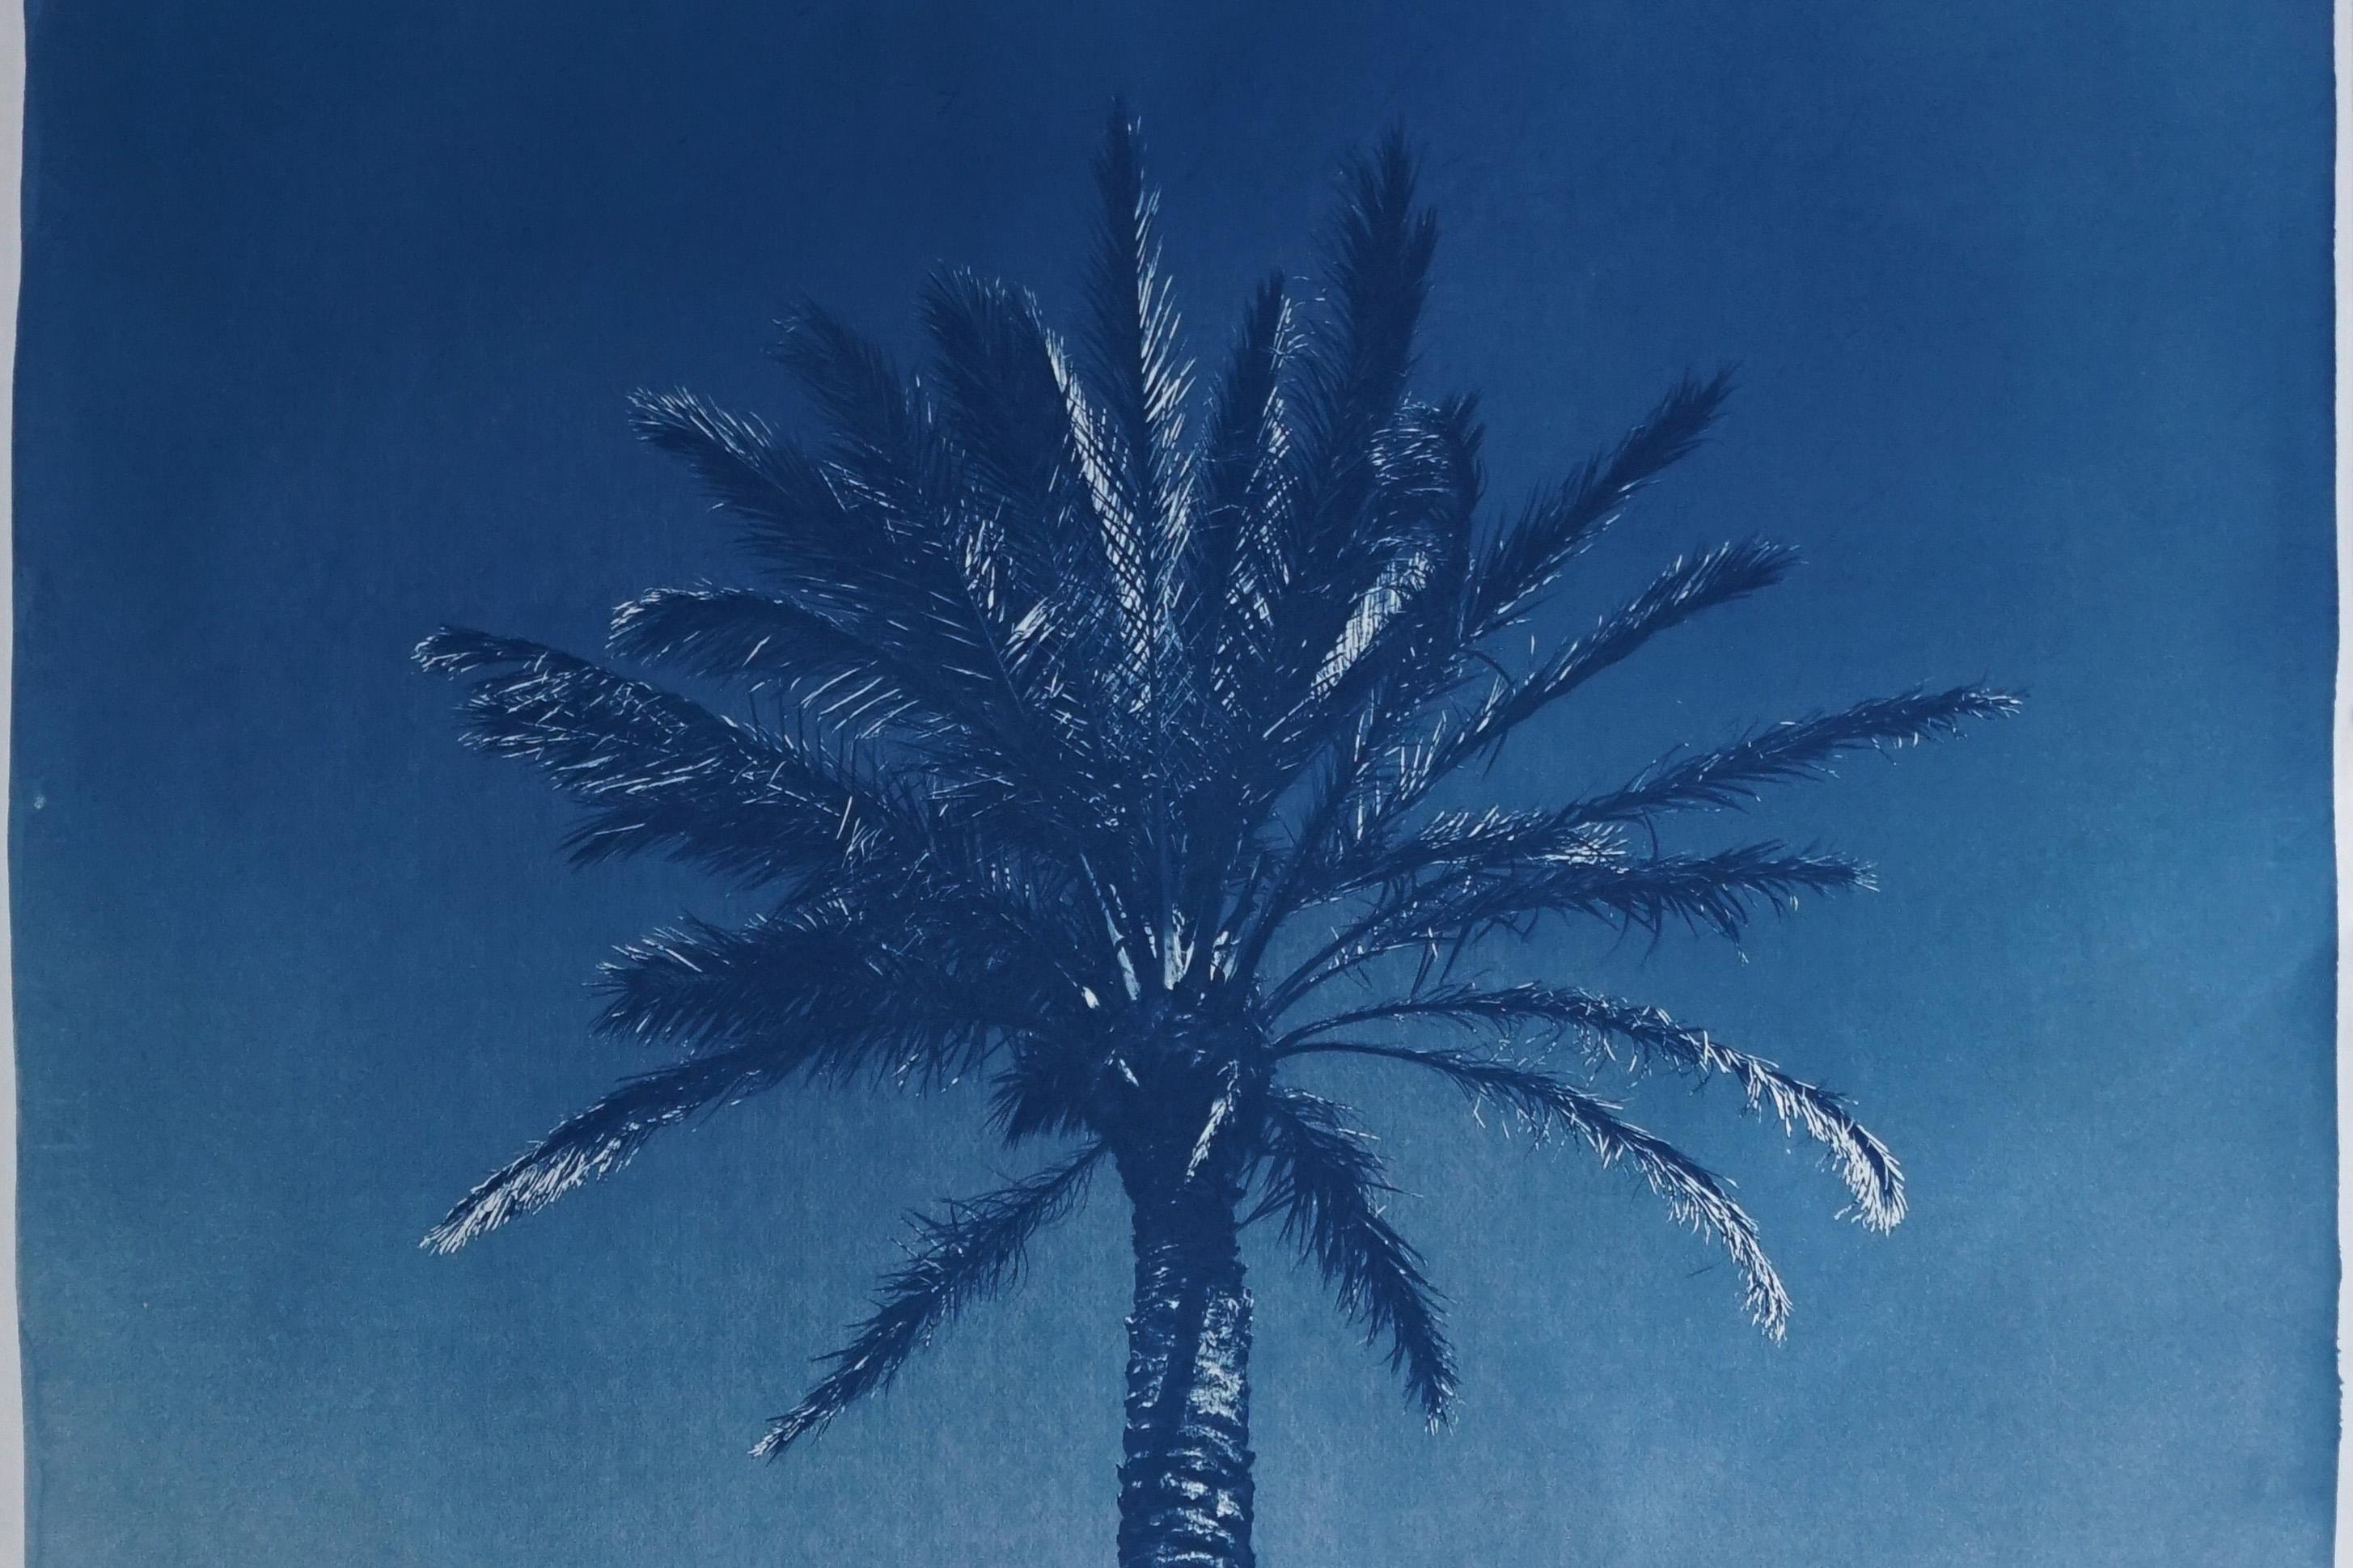 Duo de palmiers égyptiens bleus, diptyque botanique cyanotype sur papier, vintage moderne - Naturalisme Photograph par Kind of Cyan